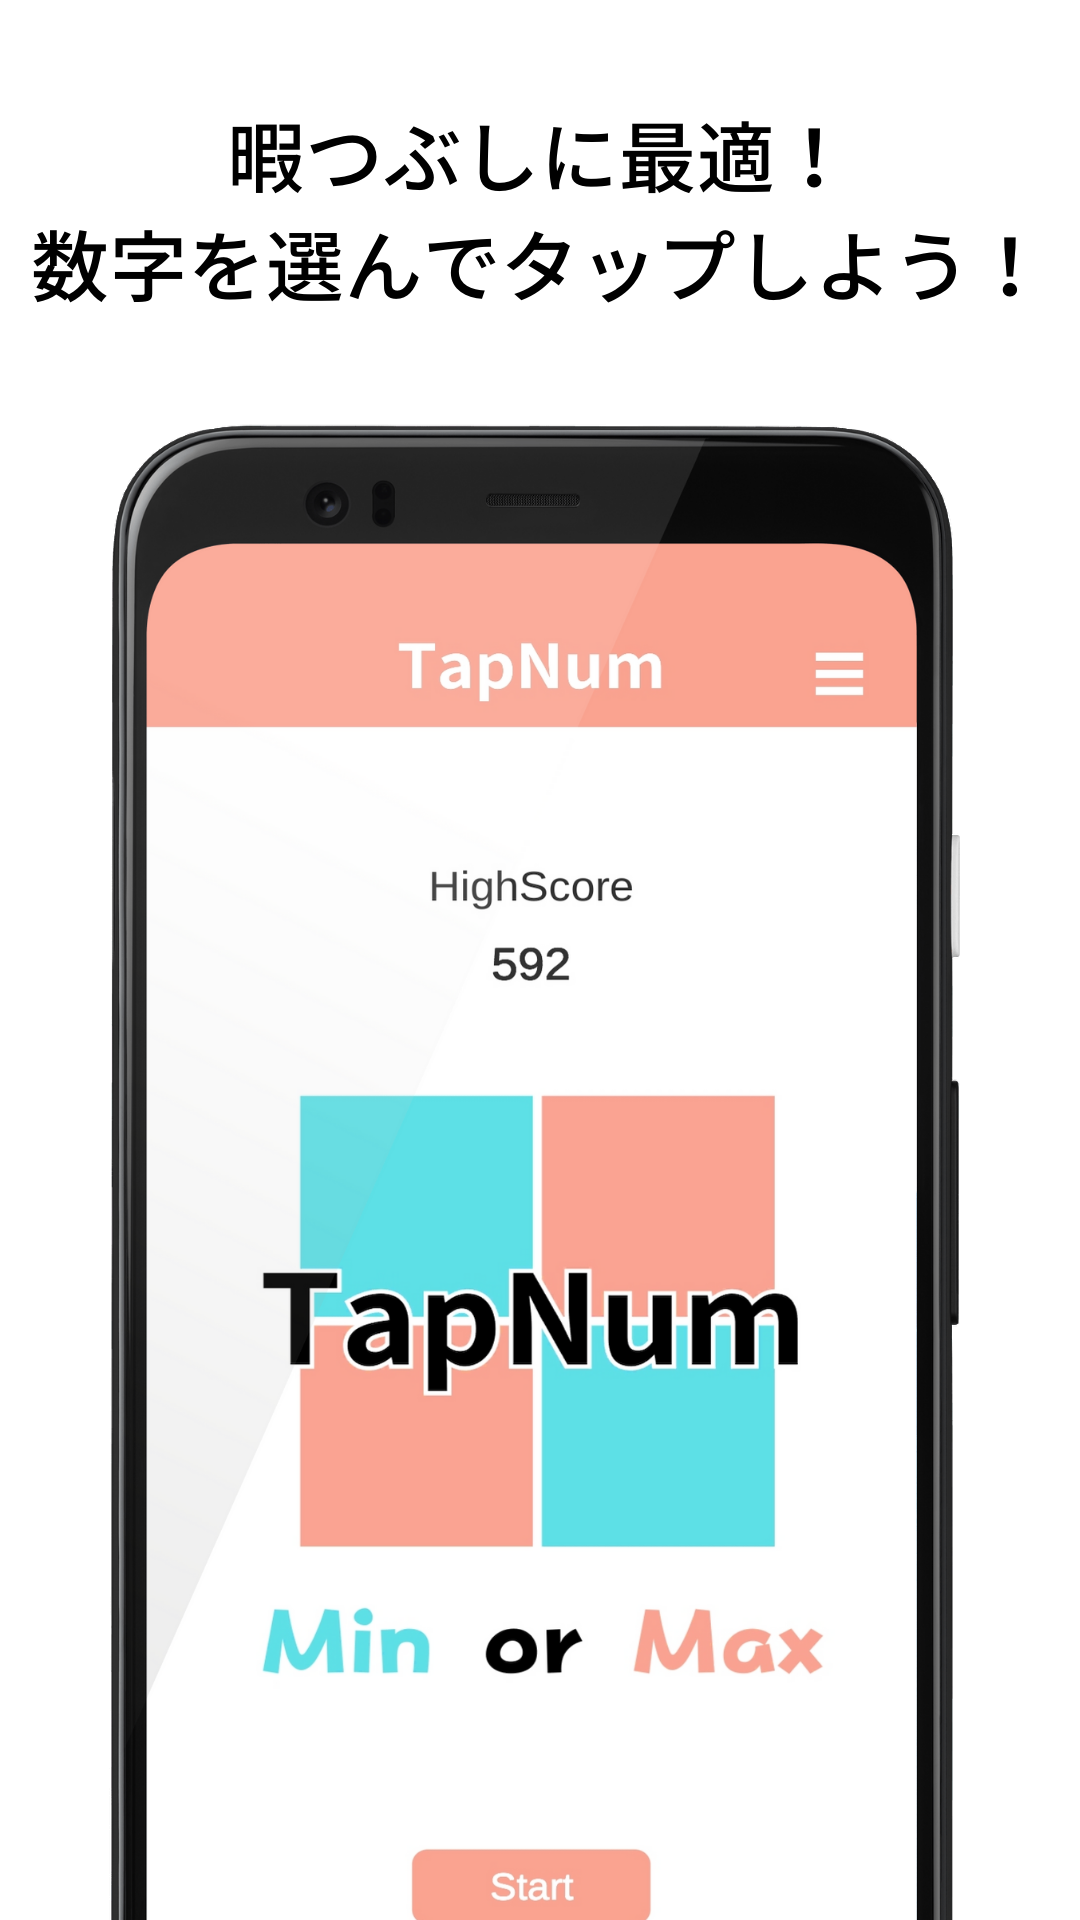 TapNum -Min or Max-